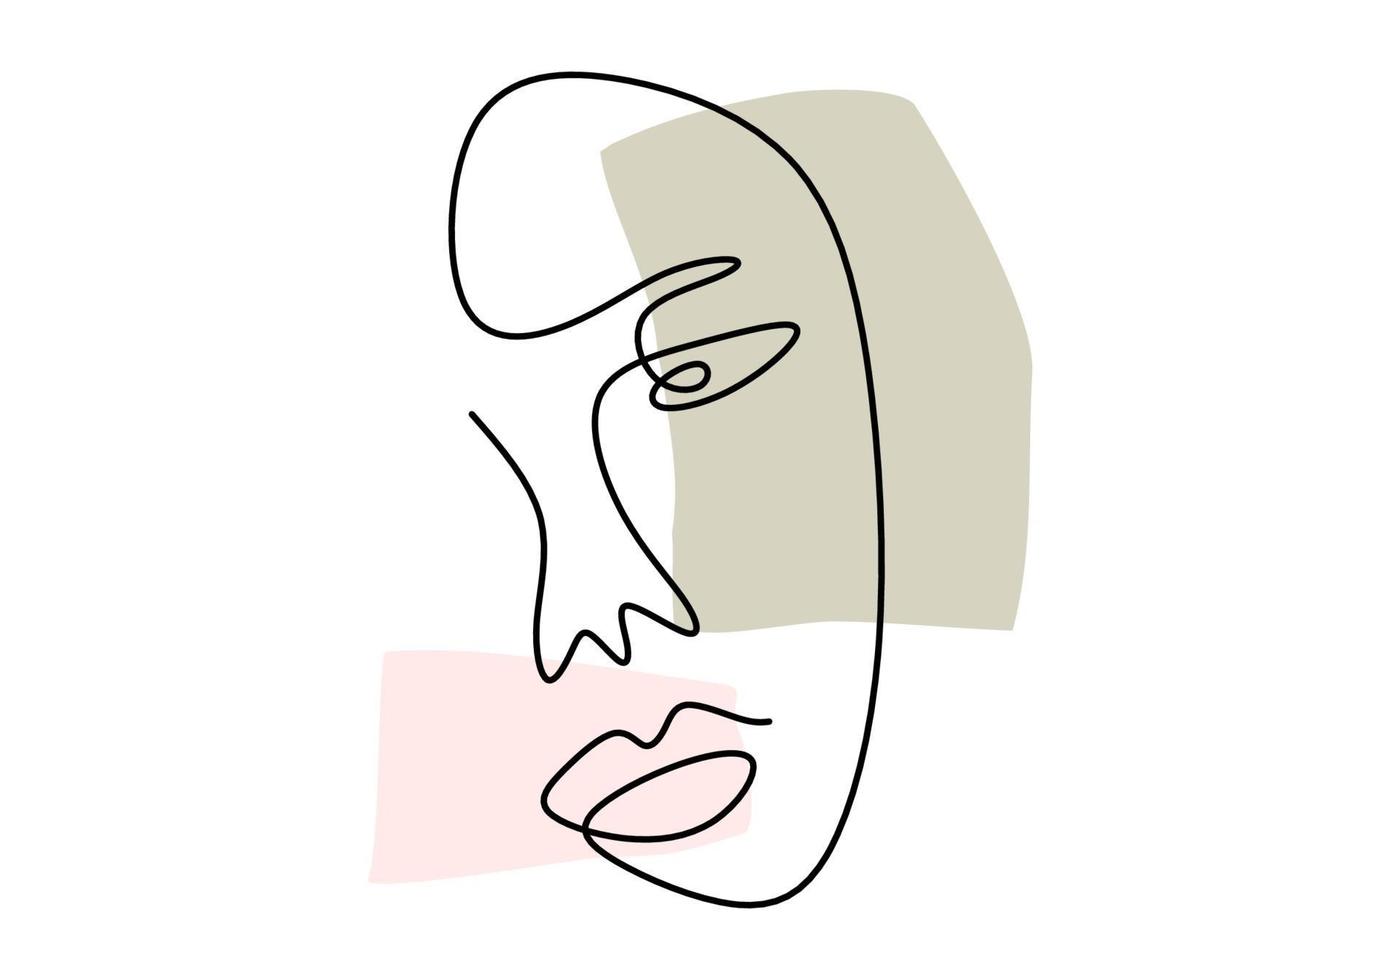 durchgehende Linie, Zeichnung von Gesichtern, Mode minimalistisches Konzept, Vektorillustration. abstrakte Gesichtshand der Frau gezeichnet lokalisiert auf weißem Hintergrund. Porträt einer Frau im modernen abstrakten Stil vektor